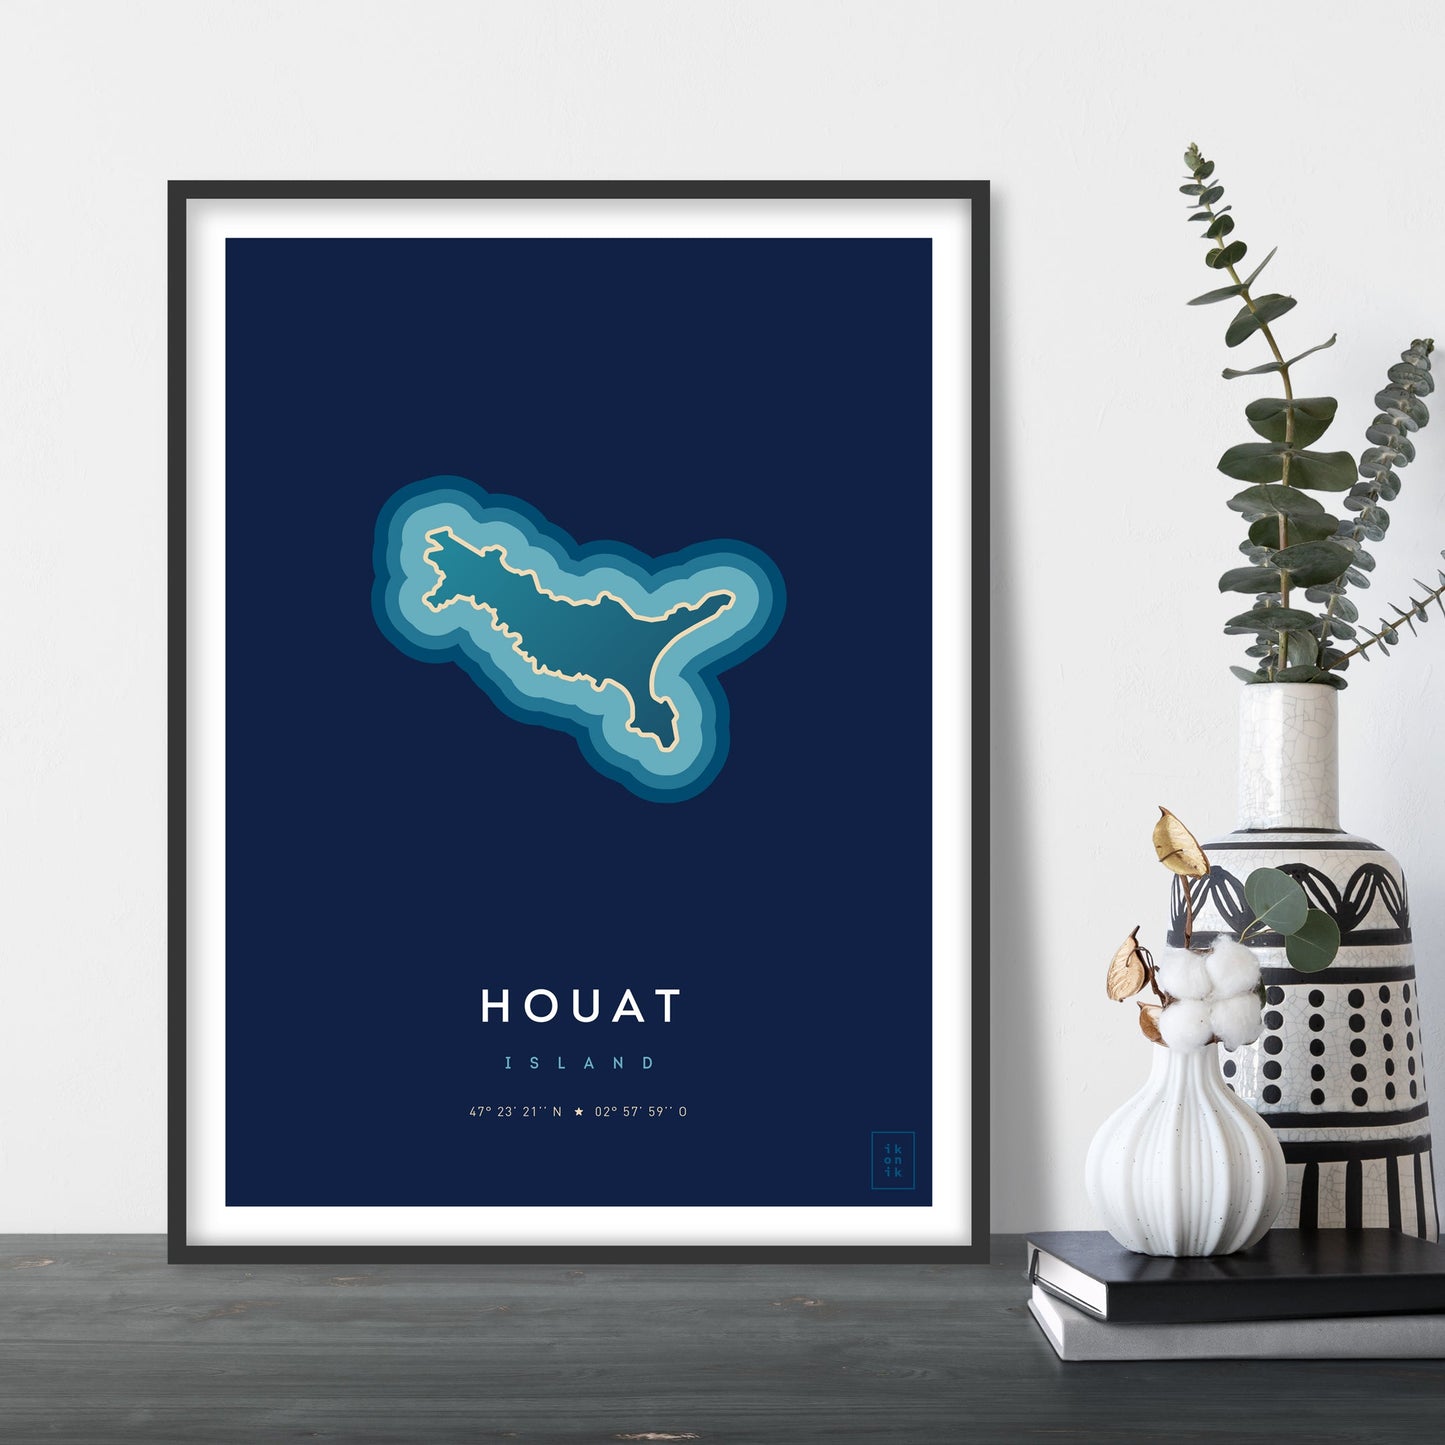 Affiche de l'île de Houat